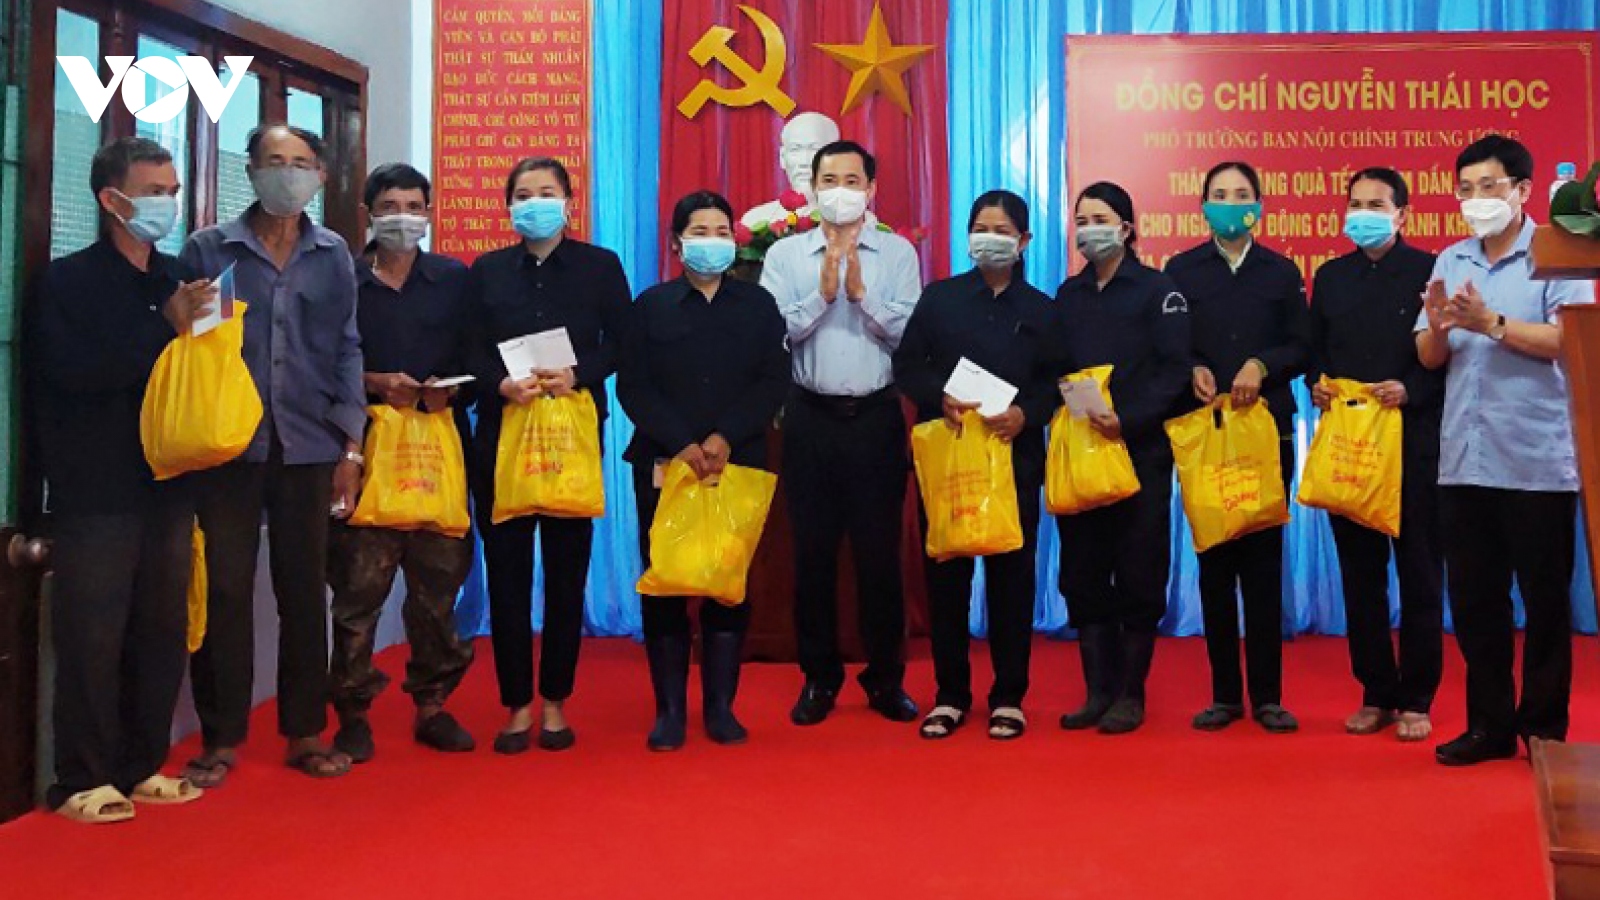 Phó Trưởng Ban Nội chính Trung ương Nguyễn Thái Học tặng quà Tết người khó khăn ở Phú Yên